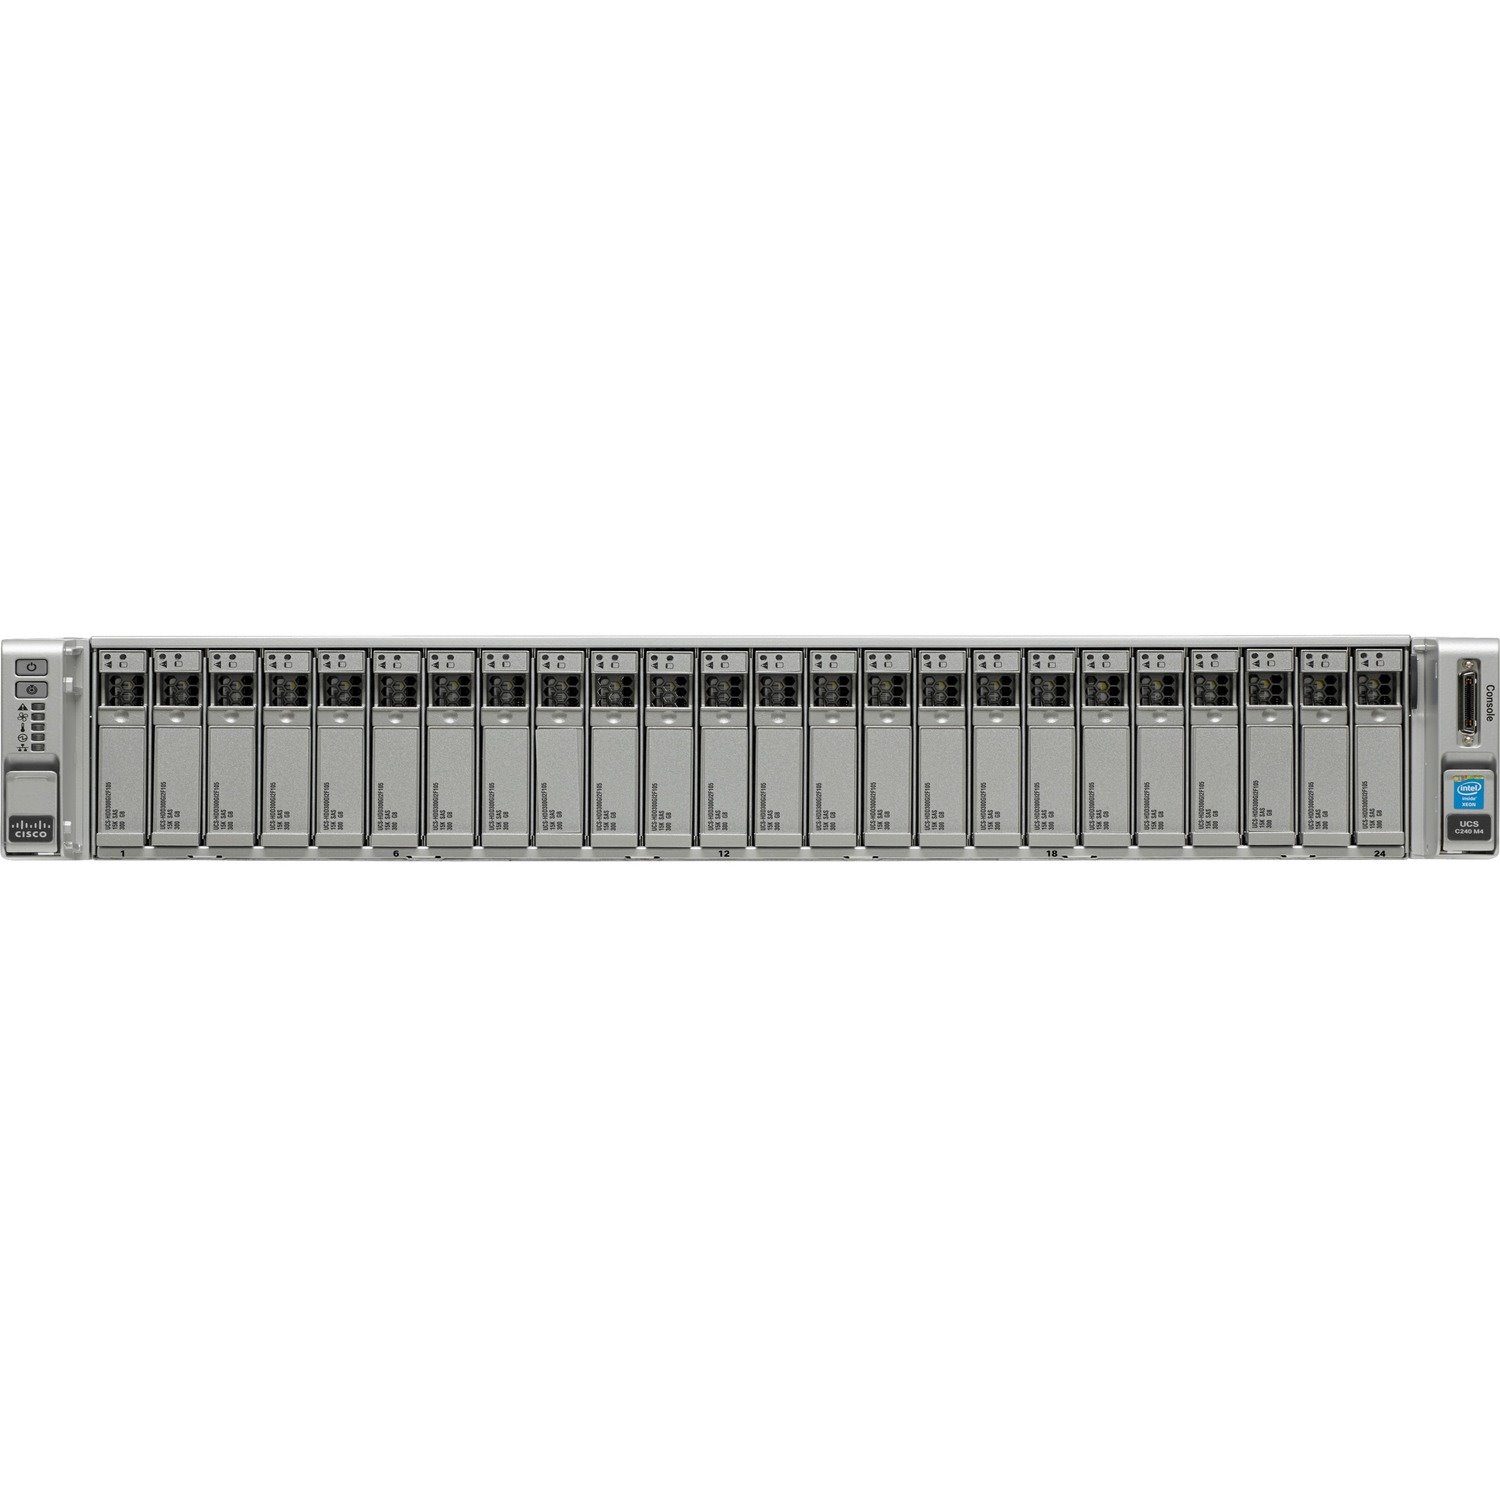 Cisco C240 M4 2U Small Form Factor Server - 2 x Intel Xeon E5-2630 v3 2.40 GHz - 128 GB RAM - Serial ATA/600 Controller